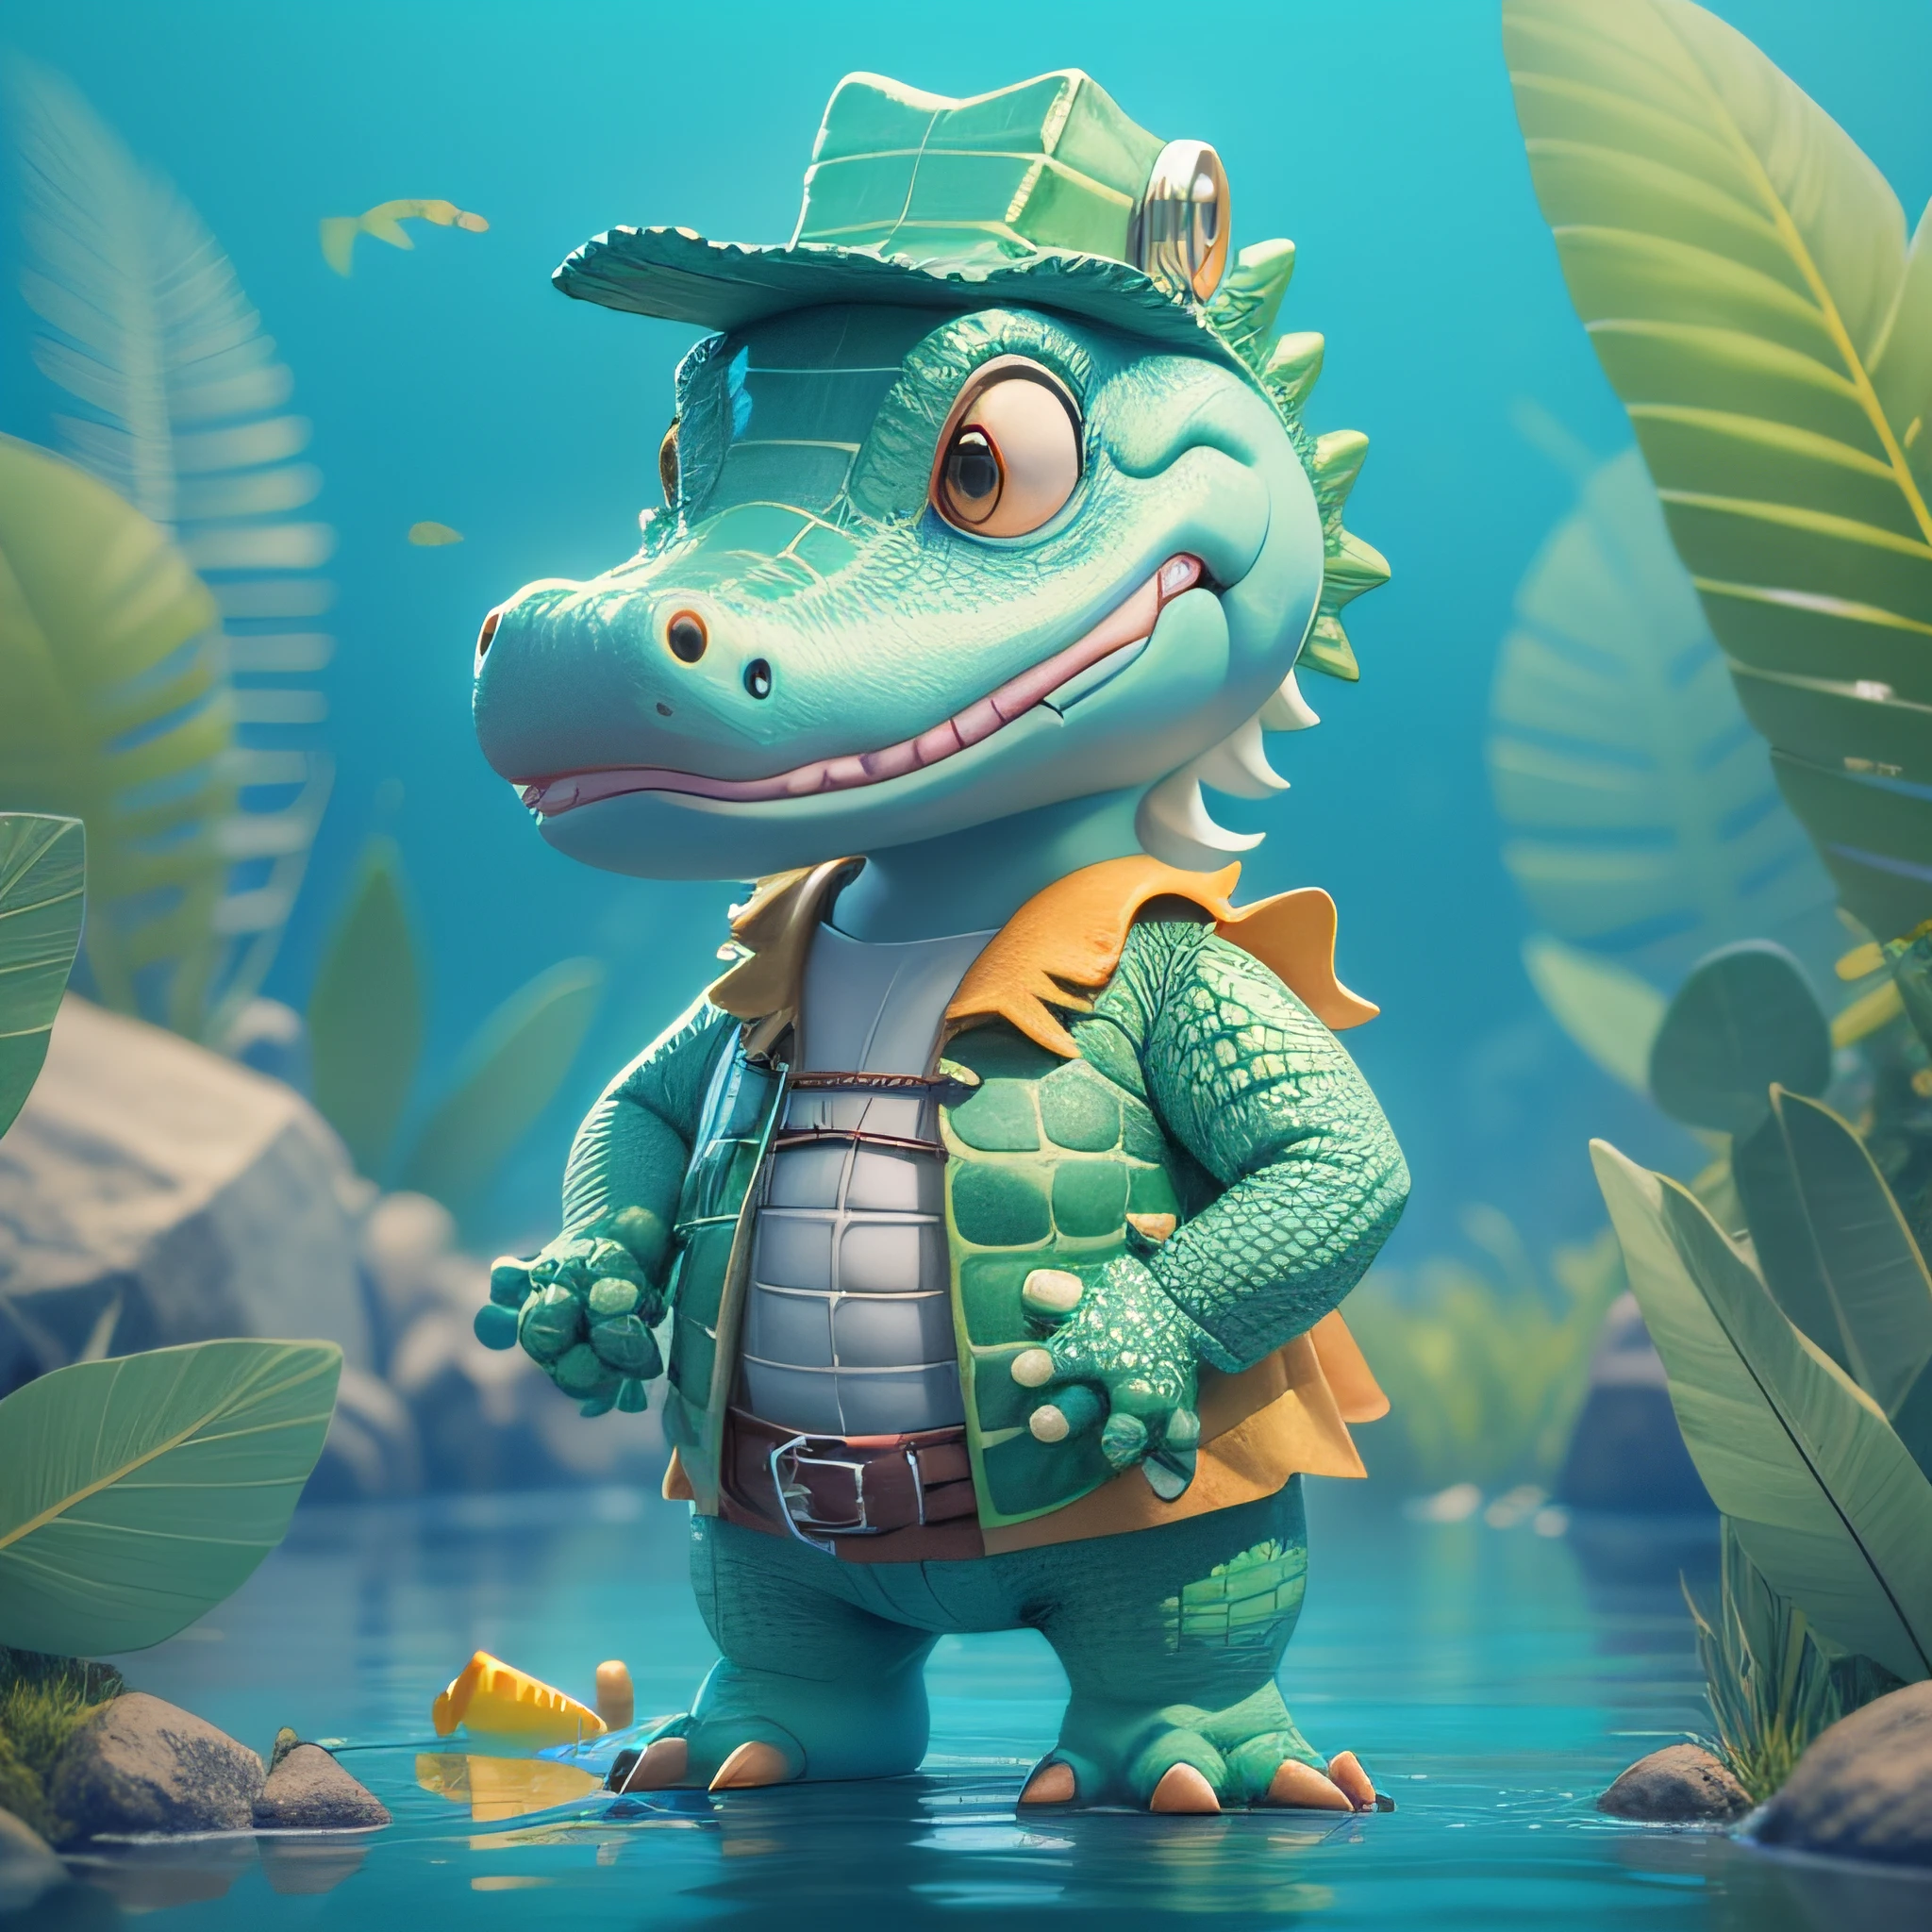 高度详细的 3D 渲染可爱的鳄鱼与鱼人服装, 儿童卡通风格, 高细节纹理, 柔软光滑的质地, 背景中的浅绿色河流颜色渐变.